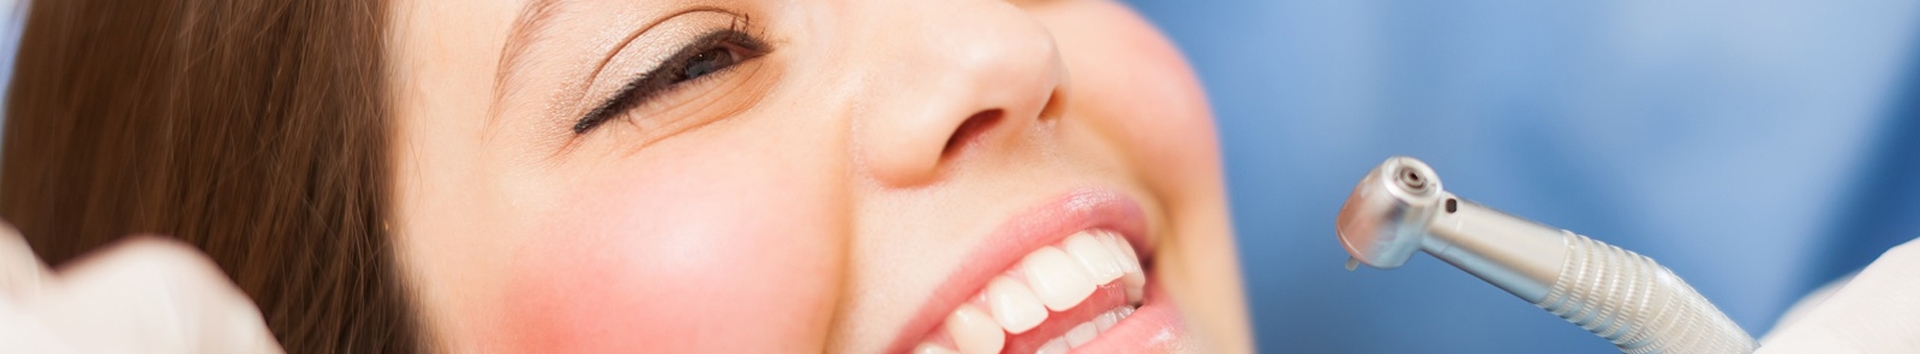 5 erros graves que vão destruir os seus dentes